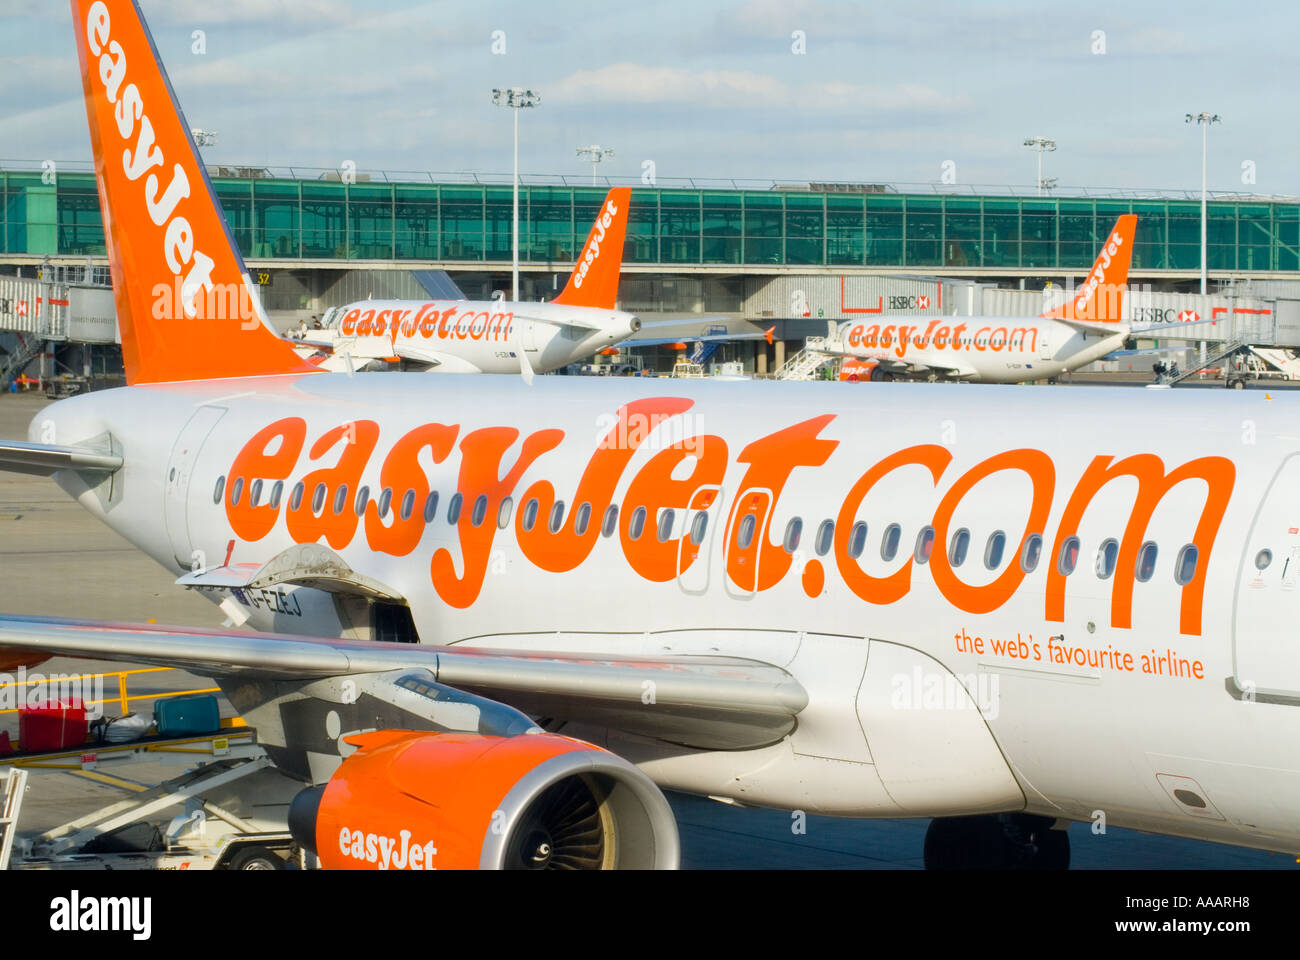 Les avions d'Easyjet à l'aéroport de Stansted England Angleterre Uk Banque D'Images